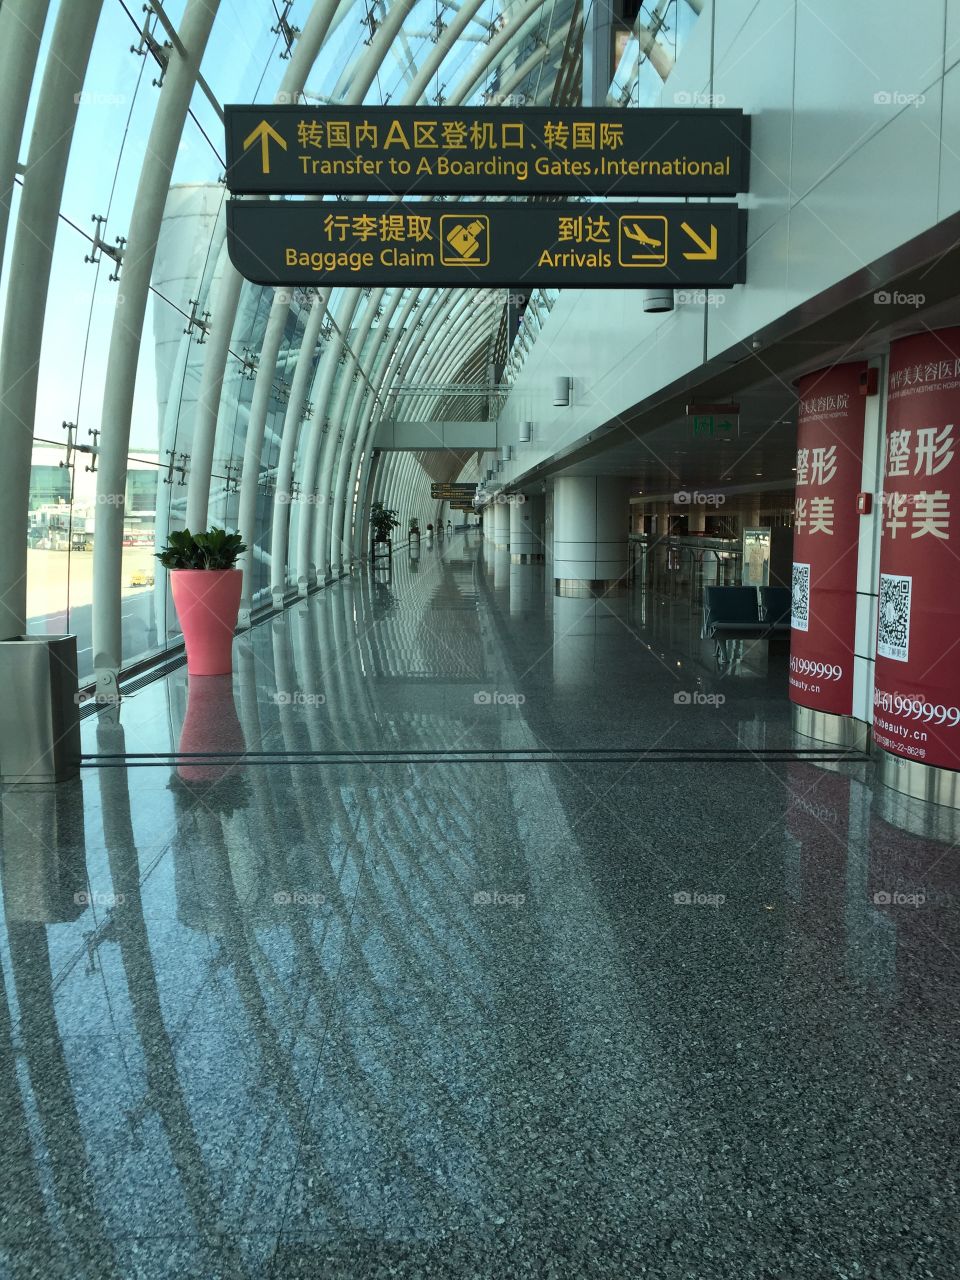 Guangzhou Baiyun International Airport
